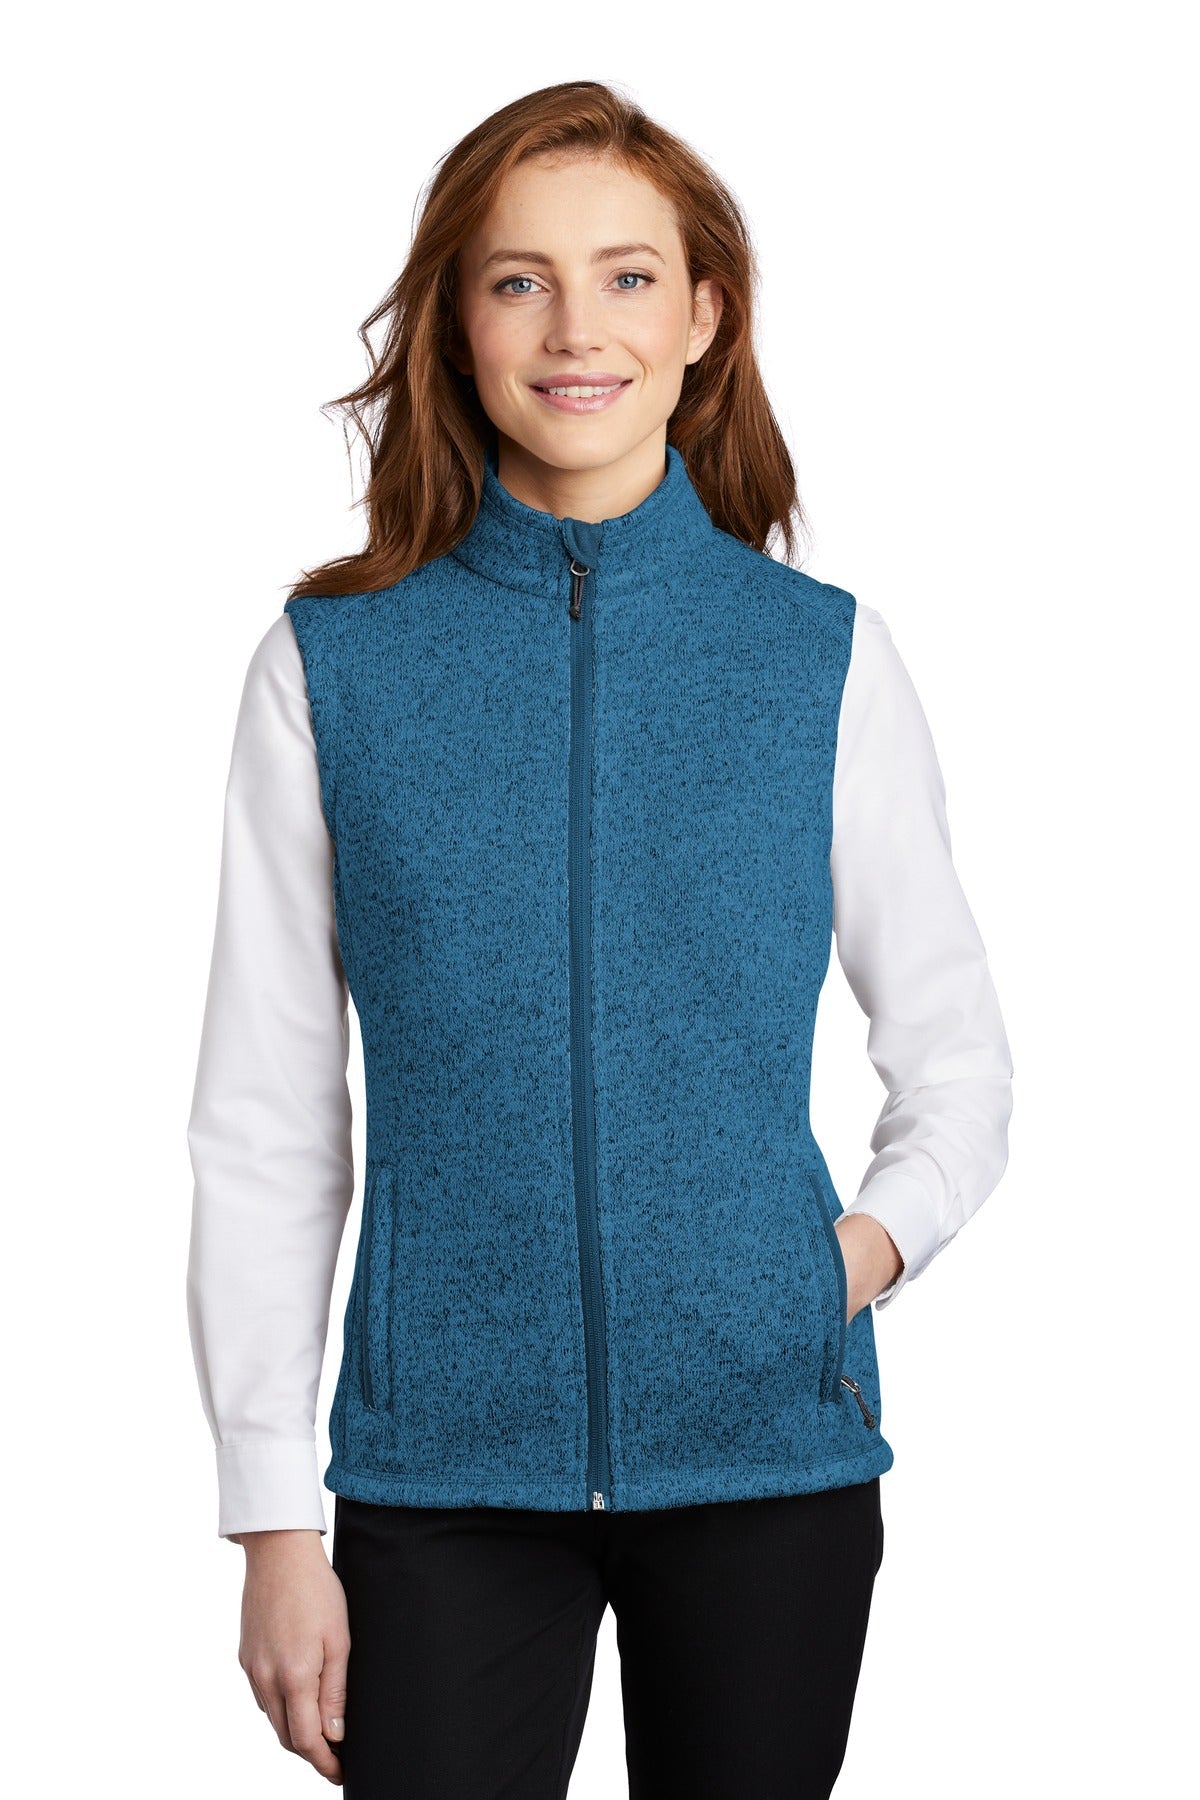 Port Authority ® Ladies Sweater Fleece Vest L236 - DFW Impression